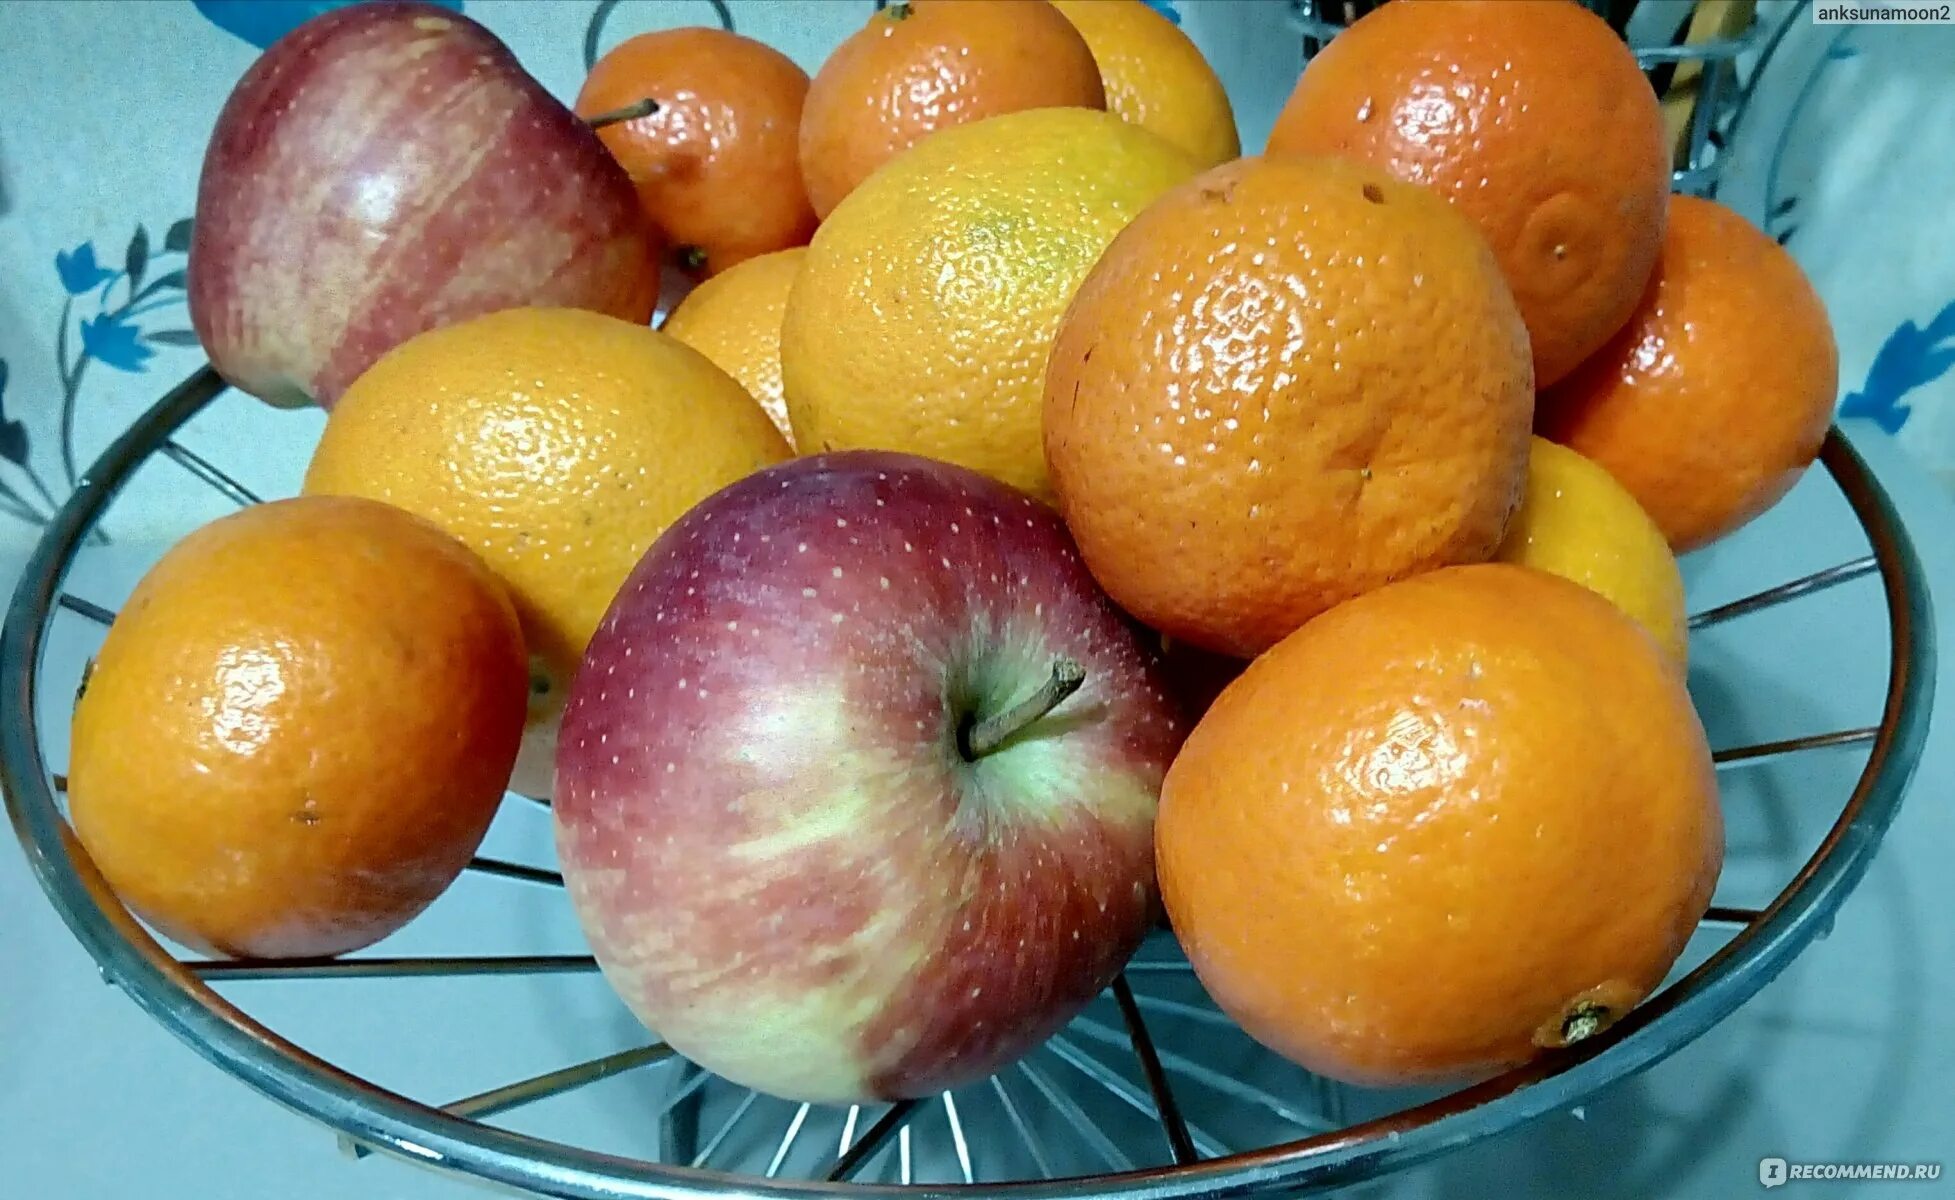 Гибрид плодовые. Фрукты гибриды. Гибрид яблока и апельсина. Мандарин Декопан. Лимон скрещенный с мандарином.